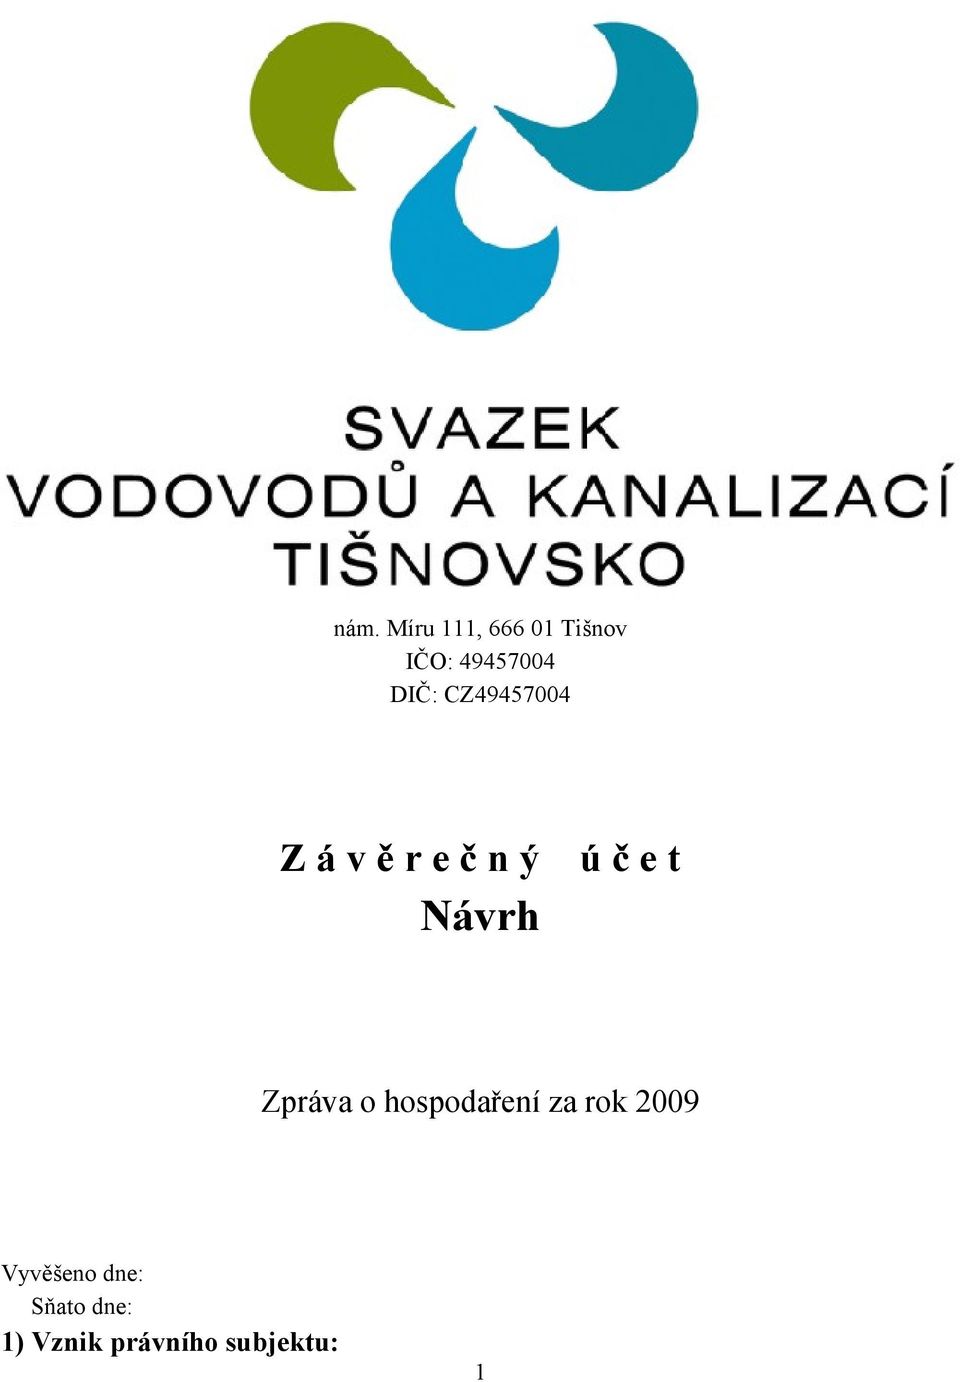 Návrh Zpráva o hospodaření za rok 2009